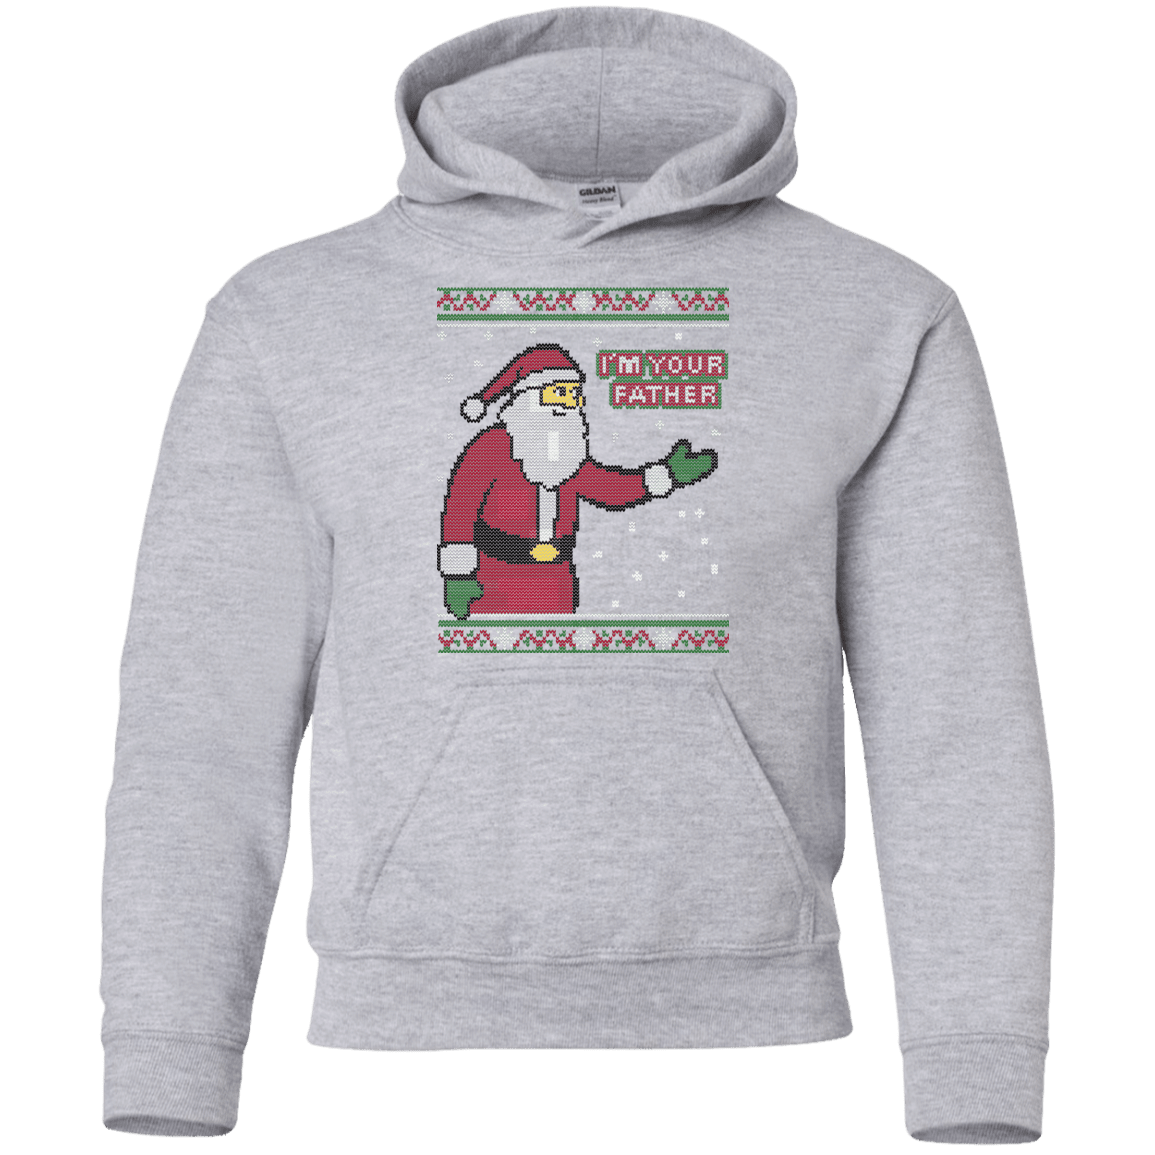 Sweatshirts Sport Grey / YS Spoiler Christmas Sweater Youth Hoodie